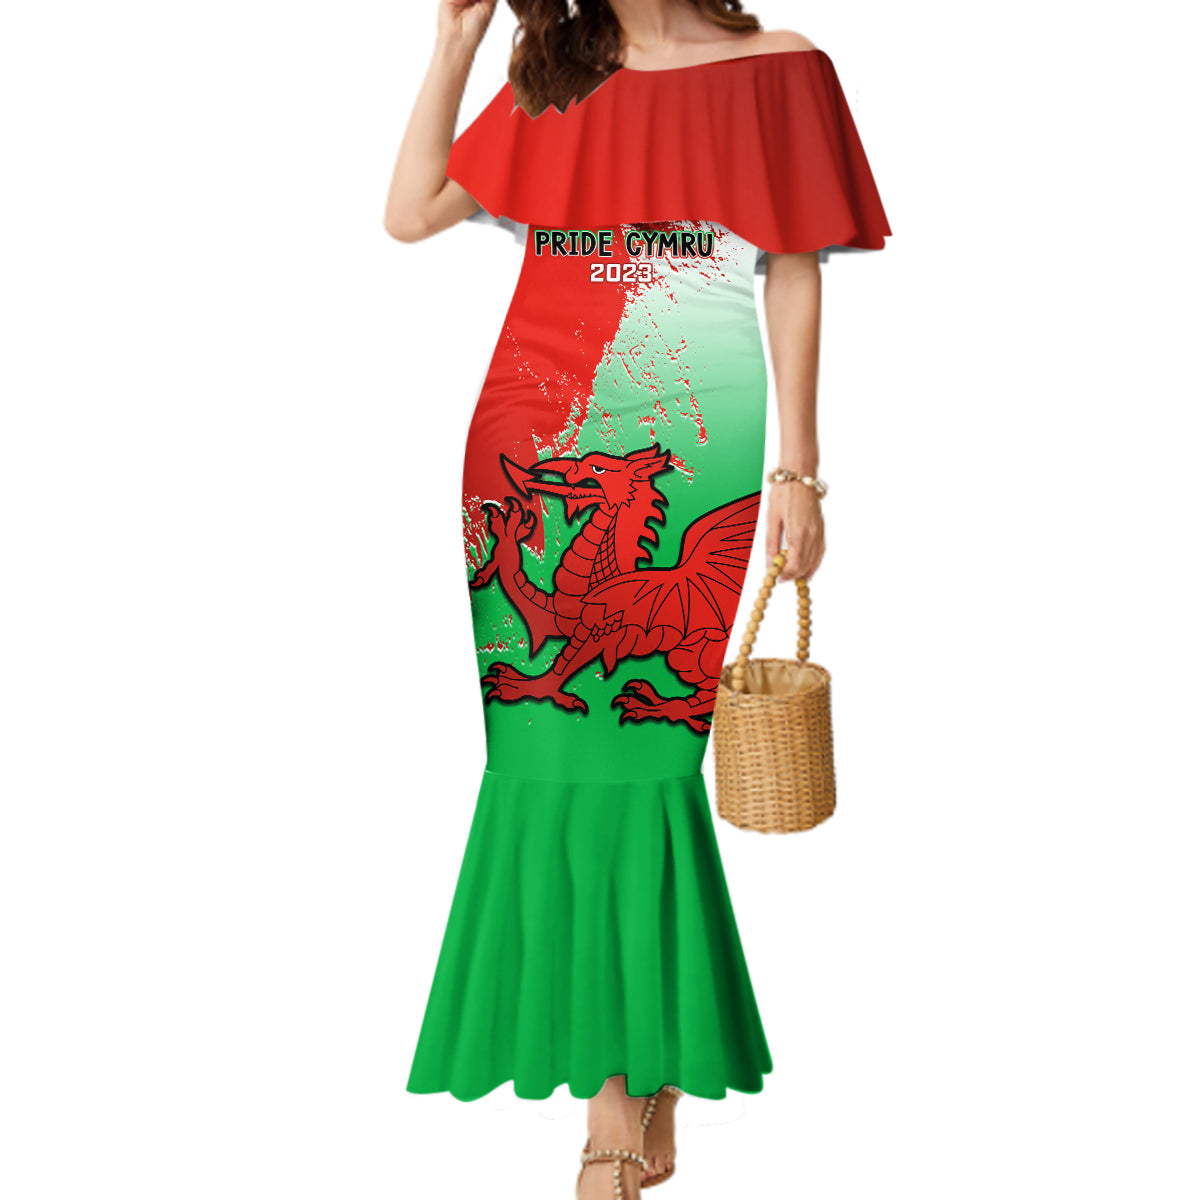 custom-pride-cymru-mermaid-dress-2023-wales-lgbt-with-welsh-red-dragon